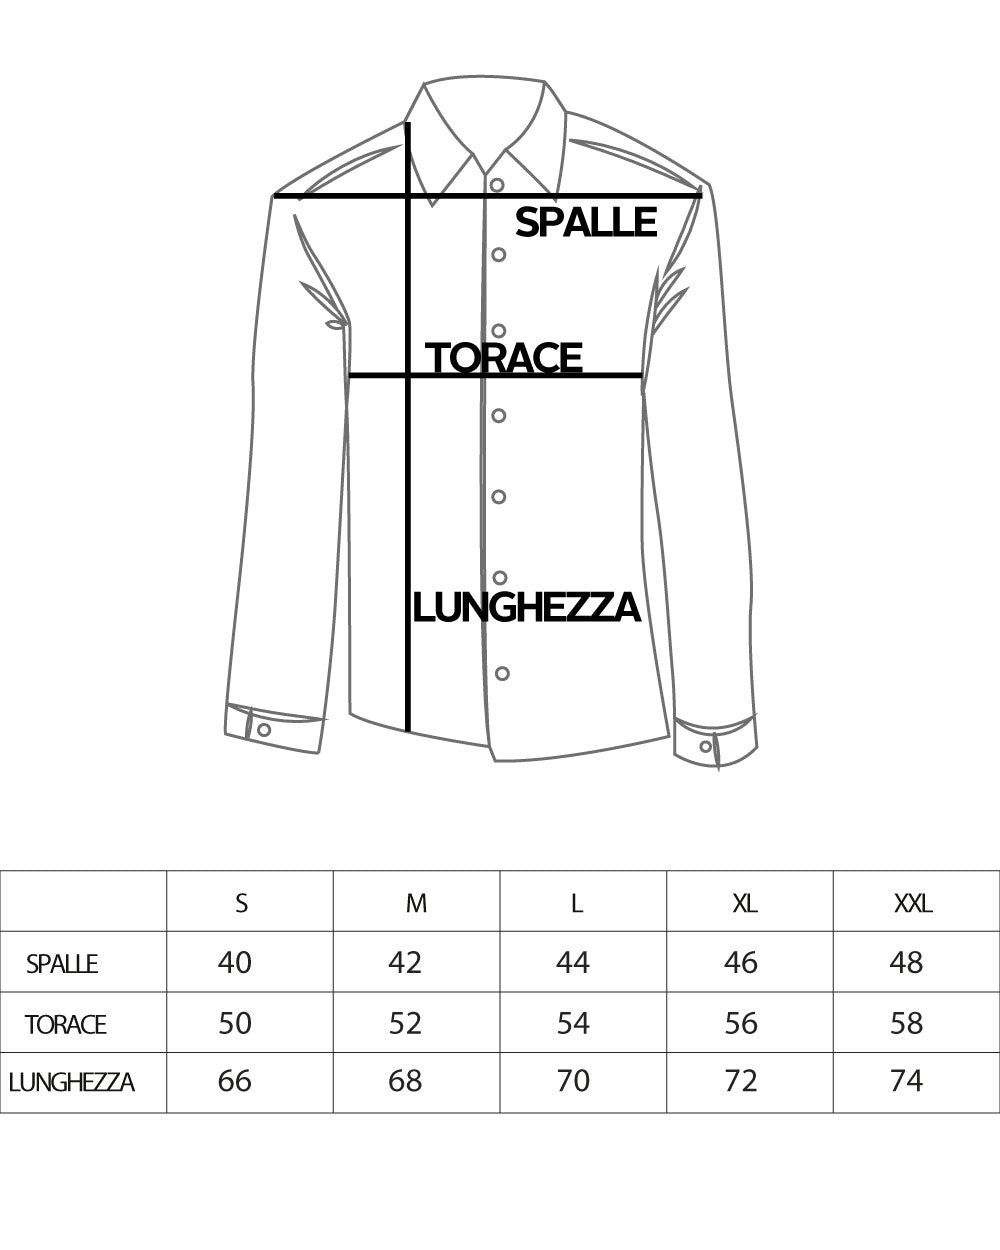 Camicia Uomo Con Colletto Francese Sartoriale Manica Lunga Lino Rigata Stretta Blu GIOSAL-C2688A